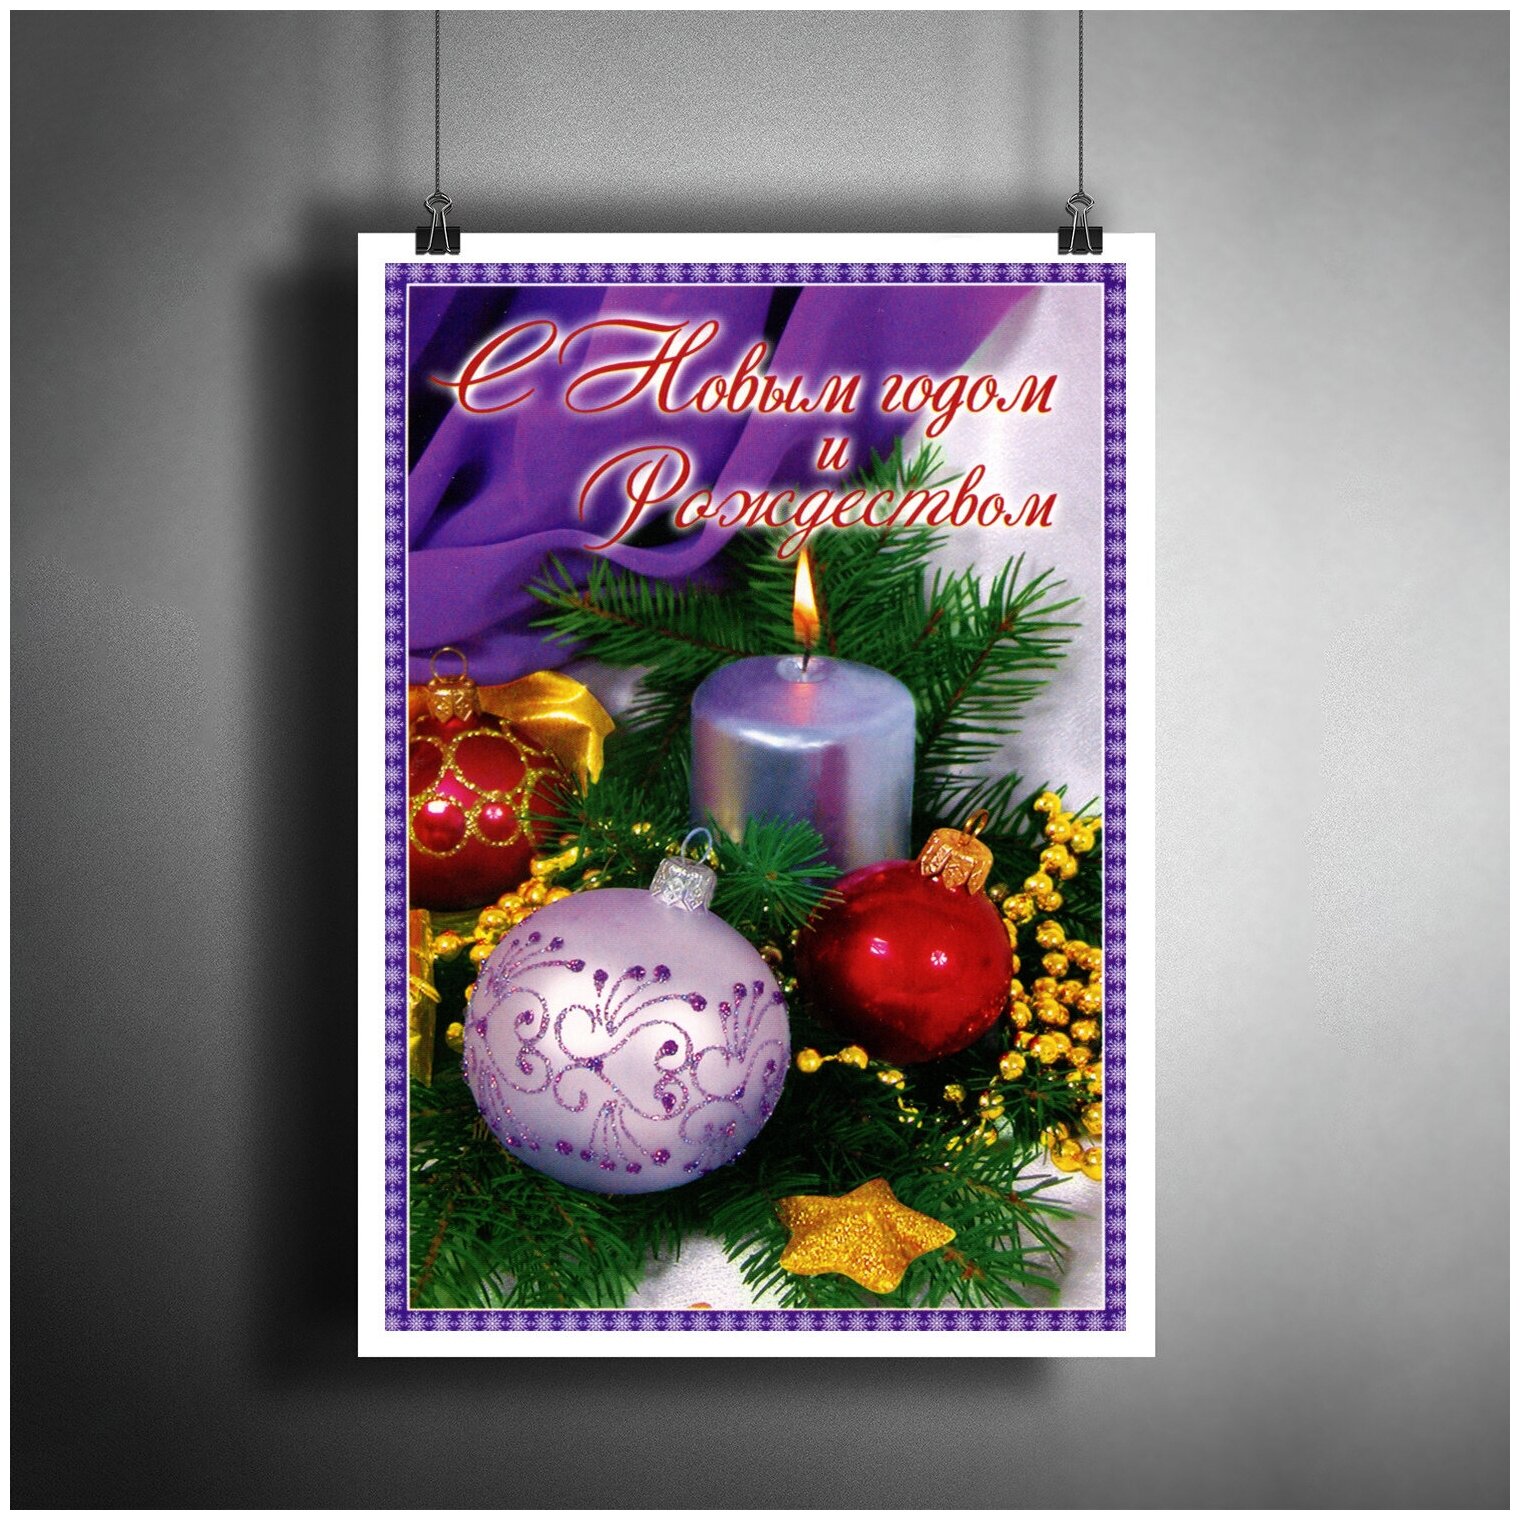 Постер плакат для интерьера "Постер "С Новым Годом и Рождеством!". Новогоднее украшение, подарок"/ Декор дома, офиса, комнаты A3 (297 x 420 мм)